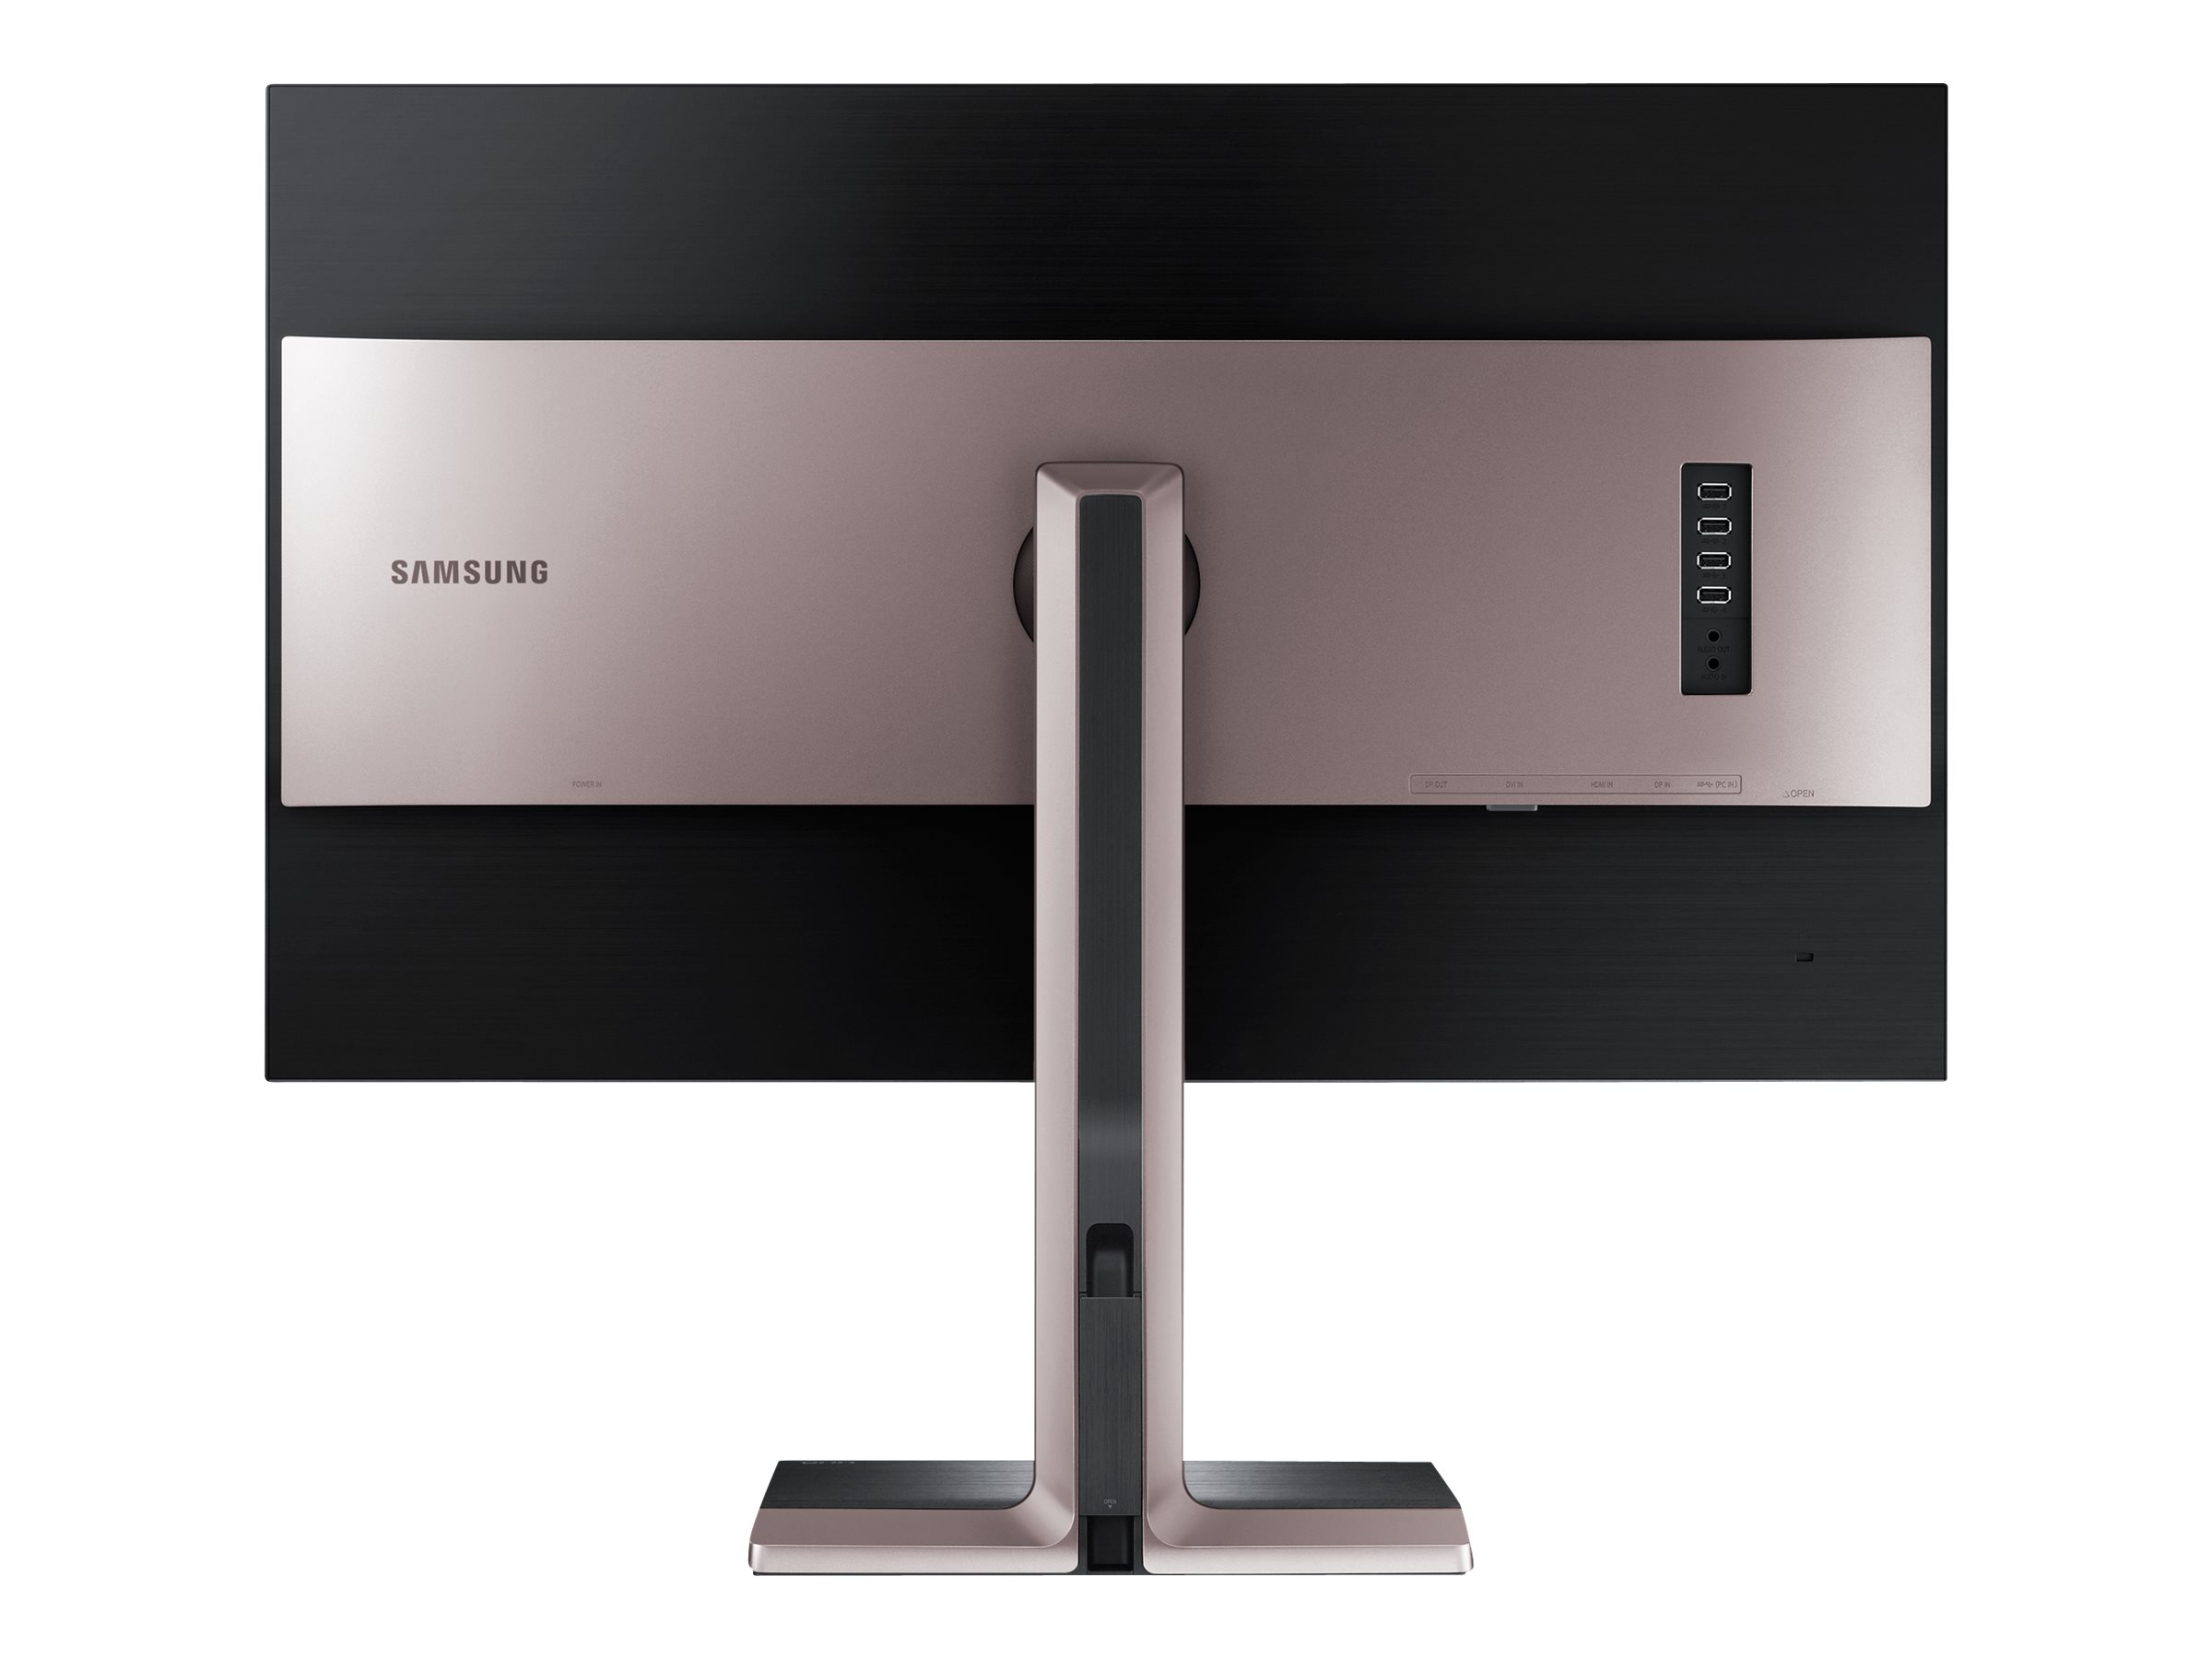 Samsung S27D850T - SD850 Series - écran LED - 27" - 2560 x 1440 - Plane to Line Switching (PLS) - 350 cd/m² - 1000:1 - 5 ms - HDMI, DVI-D, DisplayPort - argent titane, noir mat - LS27D85KTSN/EN - Écrans d'ordinateur